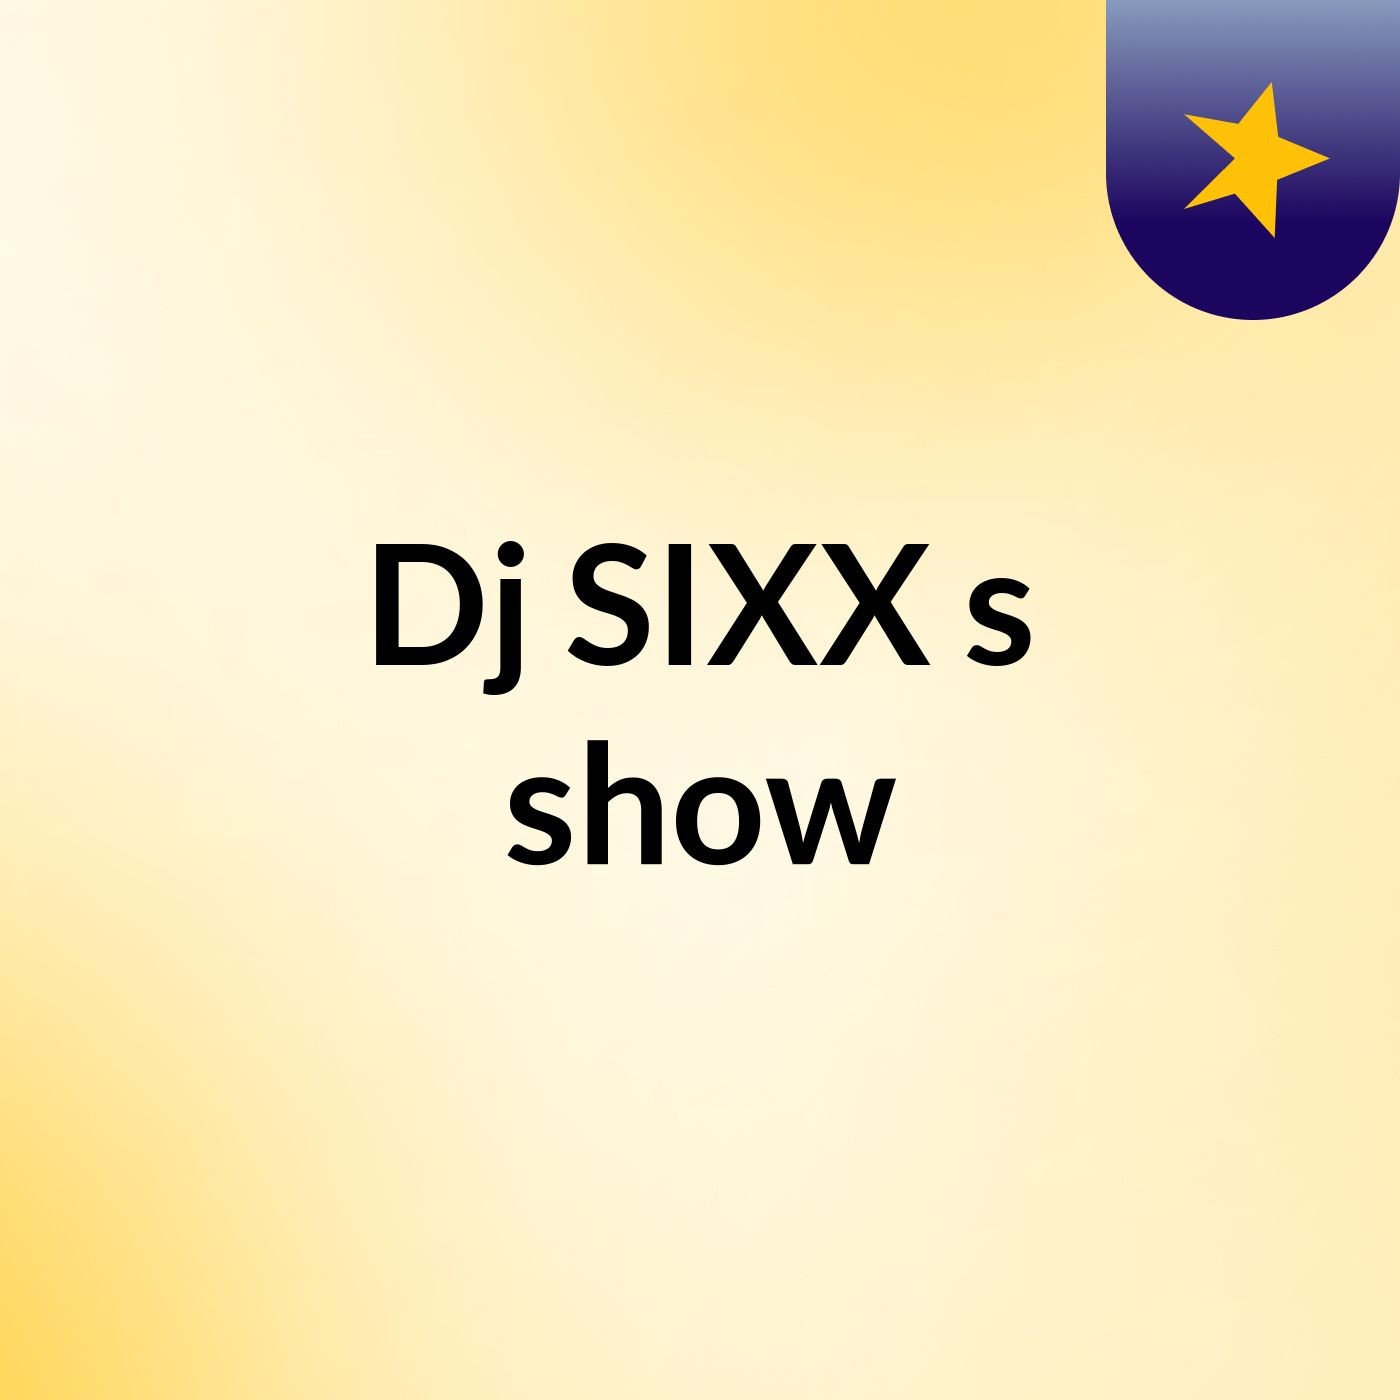 Dj SIXX's show